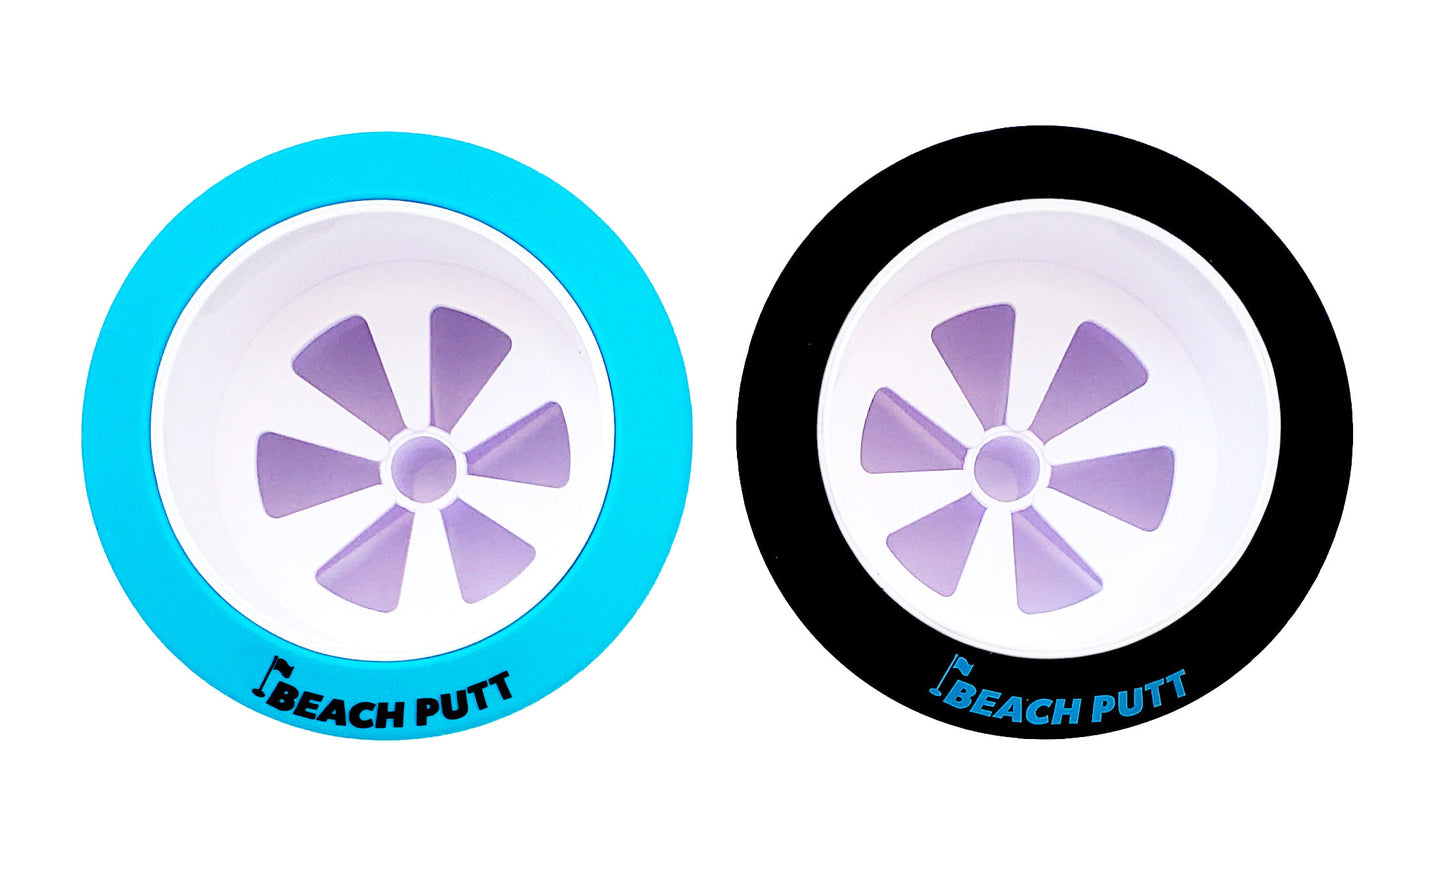 Original Beach Putt - Beach Golf Set - with (2) Adjustable Beach Putt Putters - ON SALE